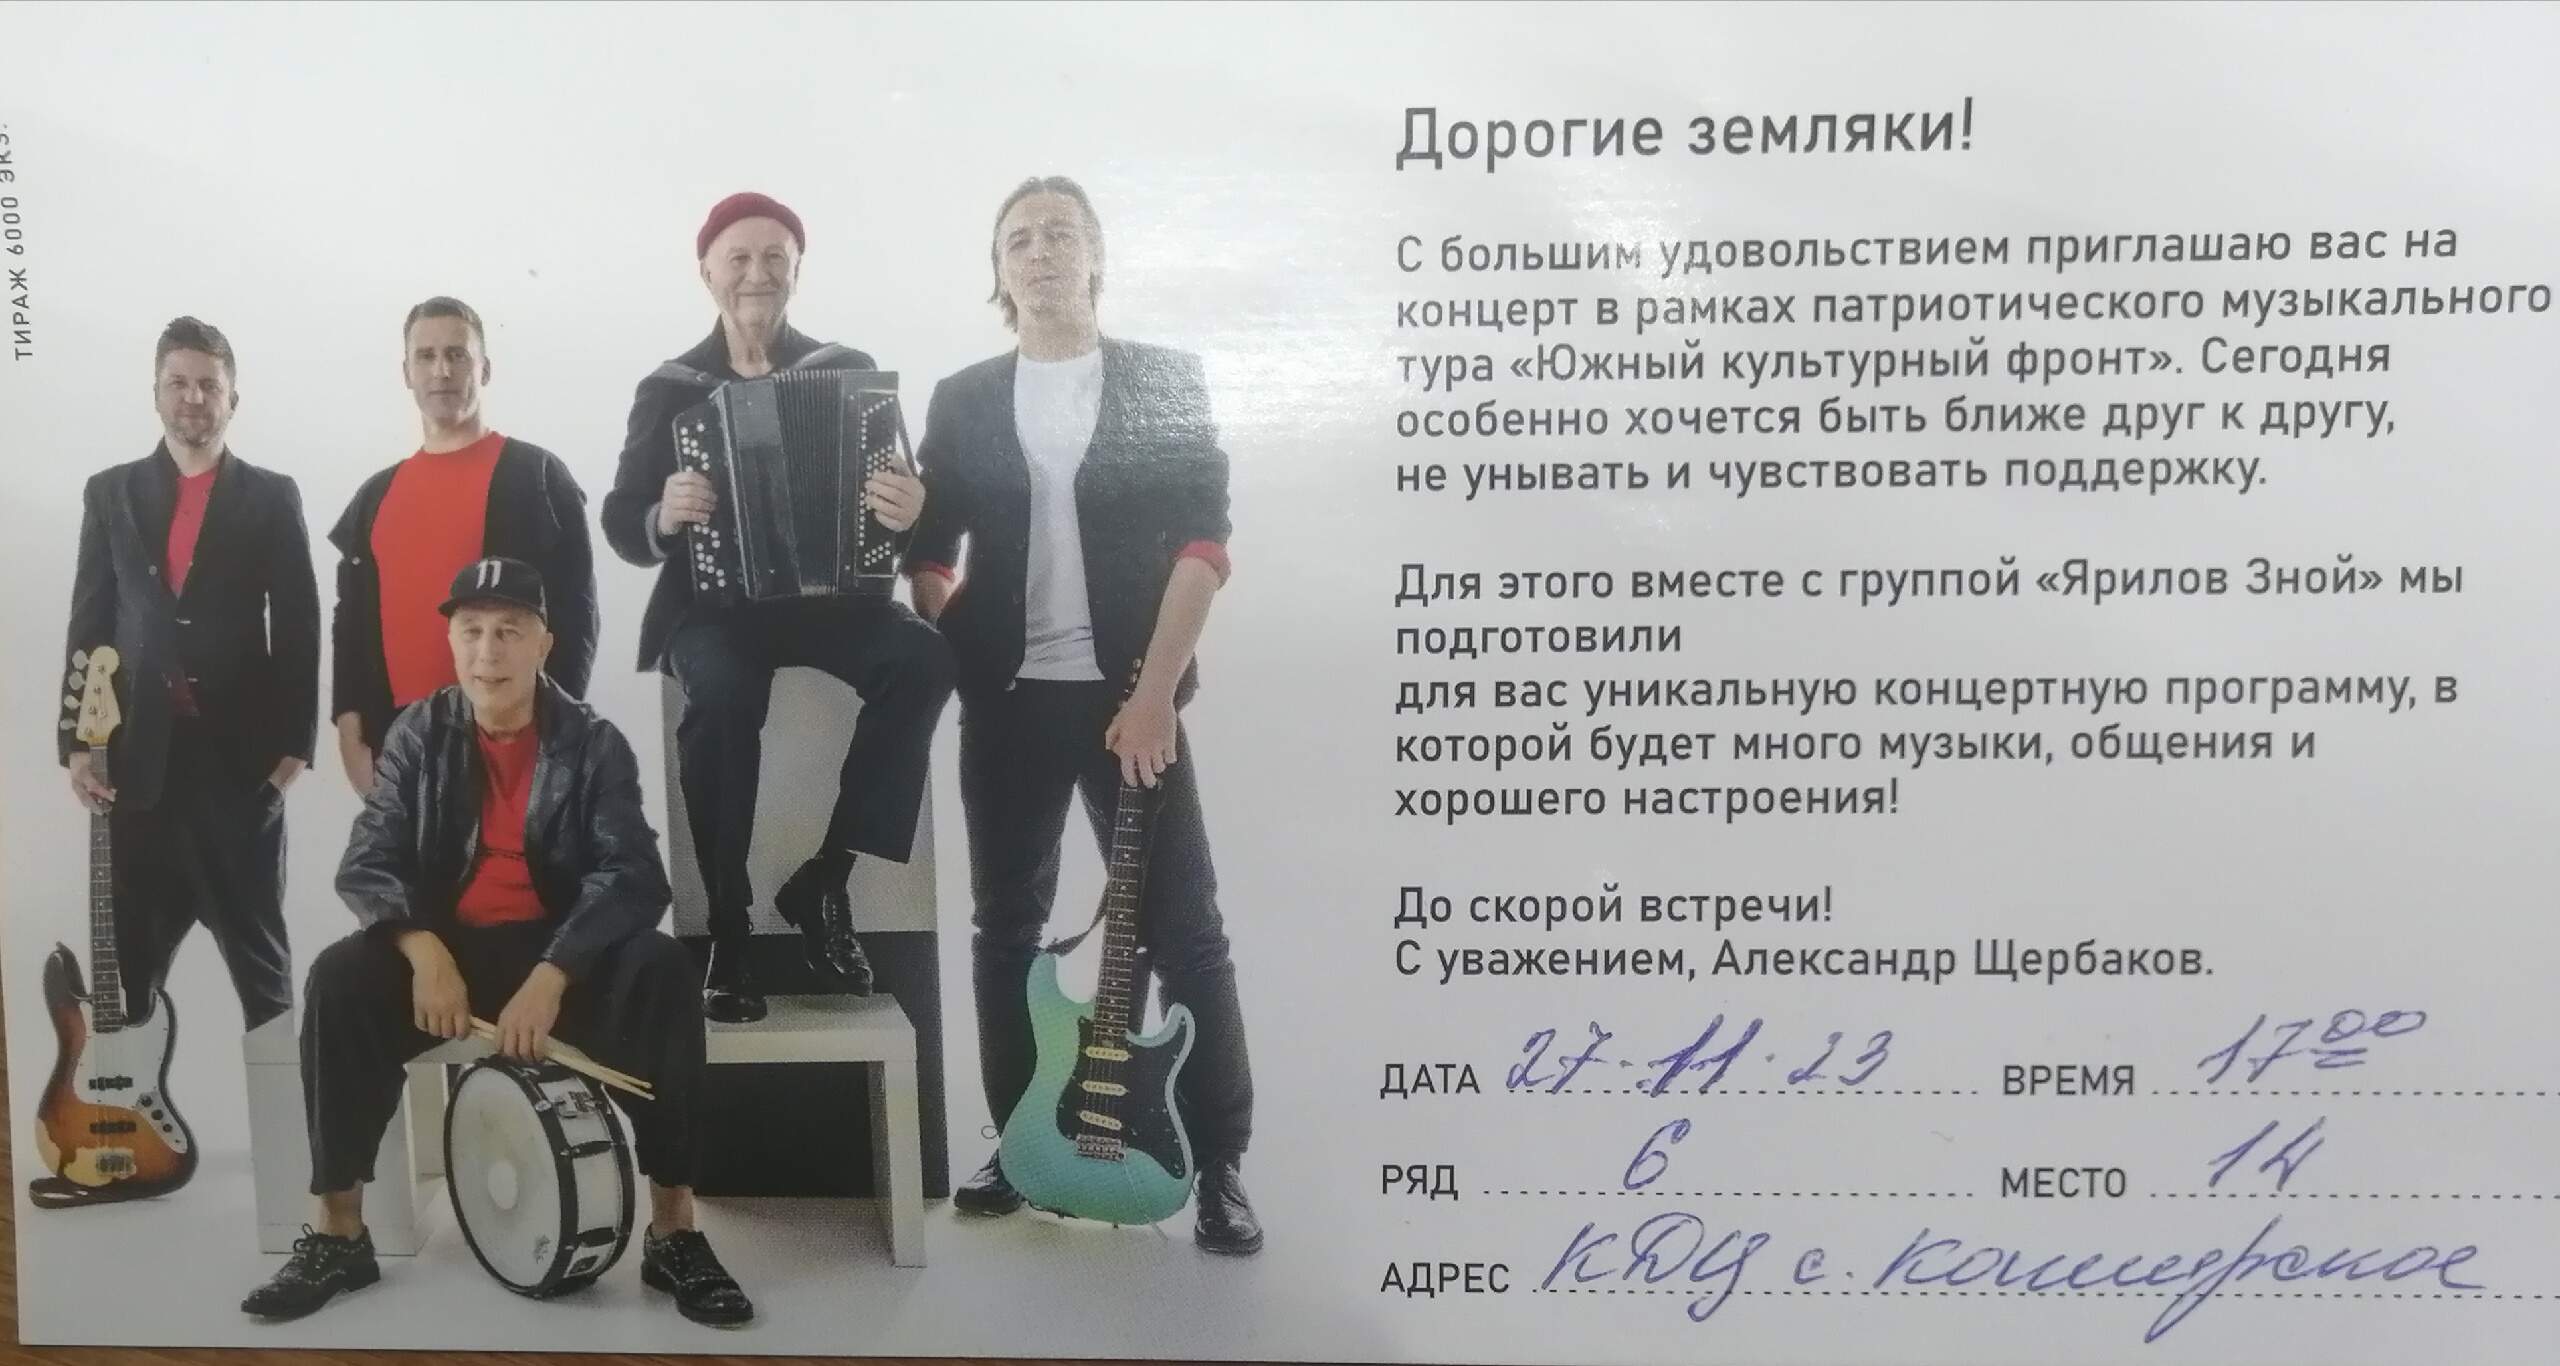 Приглашаем всех на благотворительный концерт группы &quot;Ярилов зной&quot;.